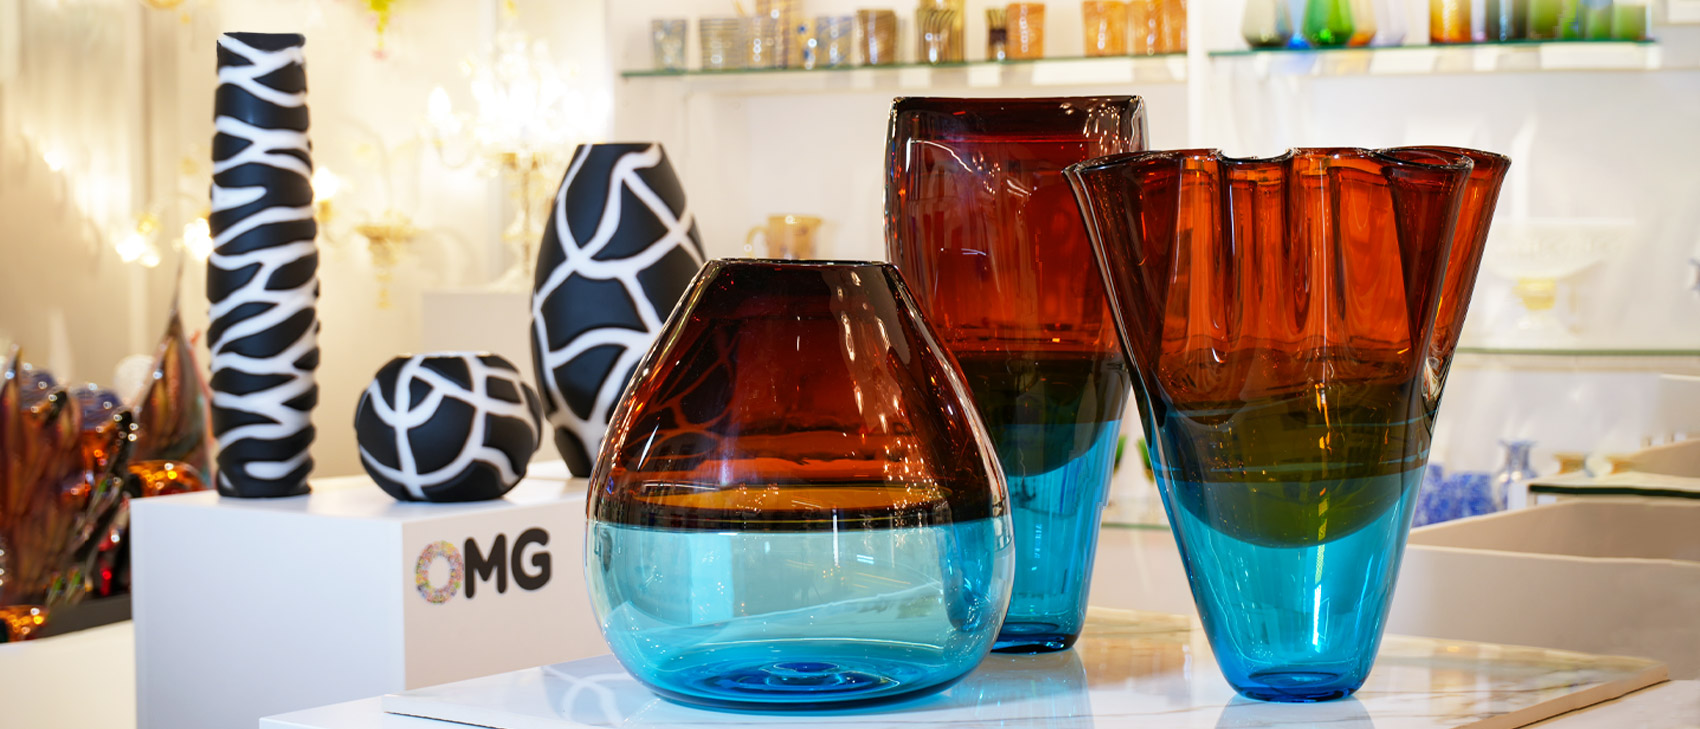  EAST CREEK, Set of 6 Colored Glassware Goblets, Vintage Wine  Goblet, 8.5 oz Embossed Design, Drinking Glass with Stem